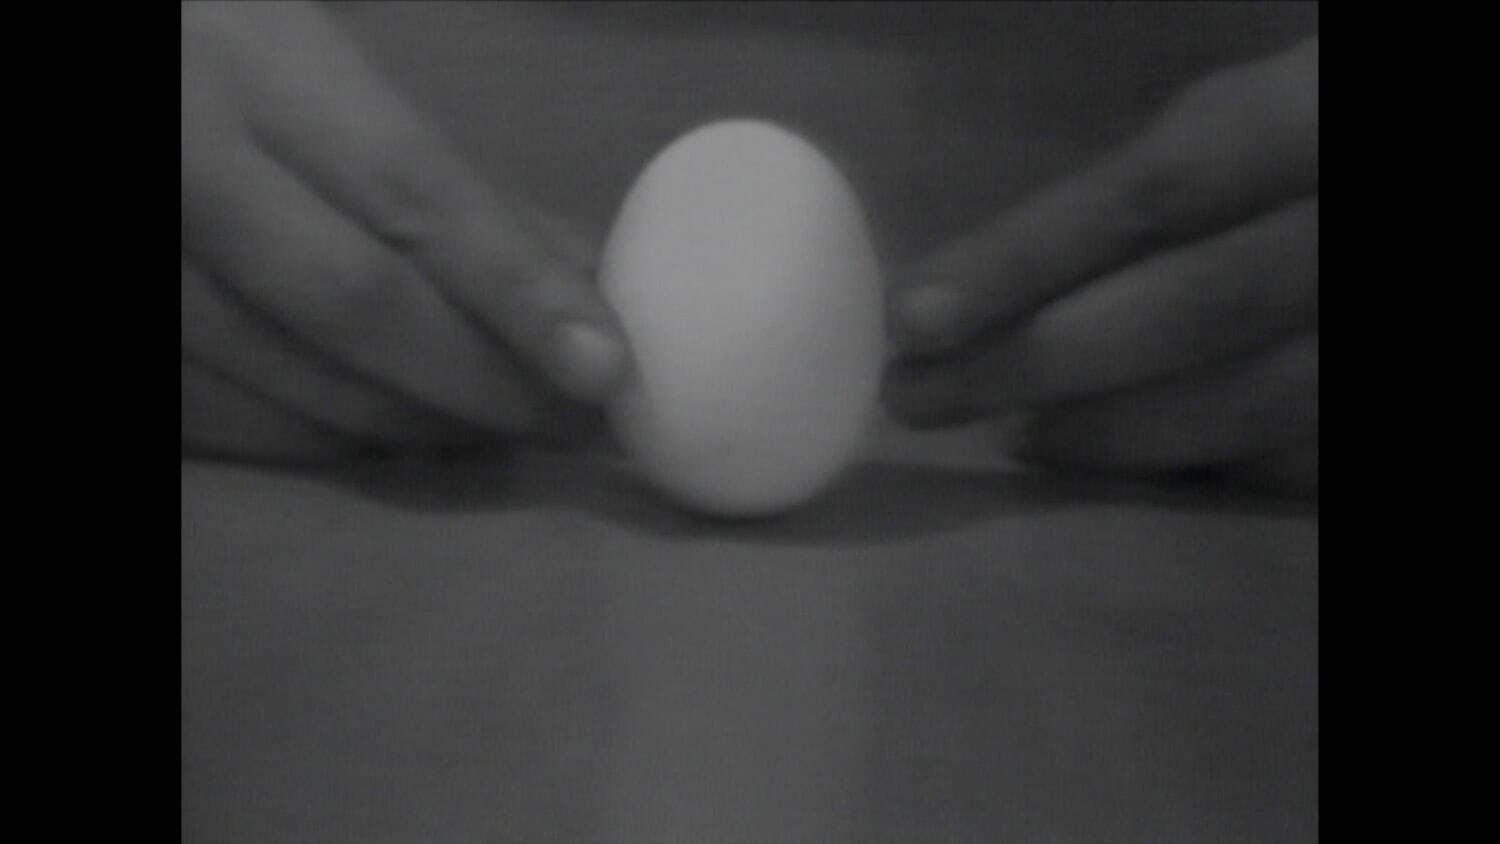 中谷芙二子 《卵の静力学》 1973年 東京都写真美術館蔵
©Fujiko Nakaya